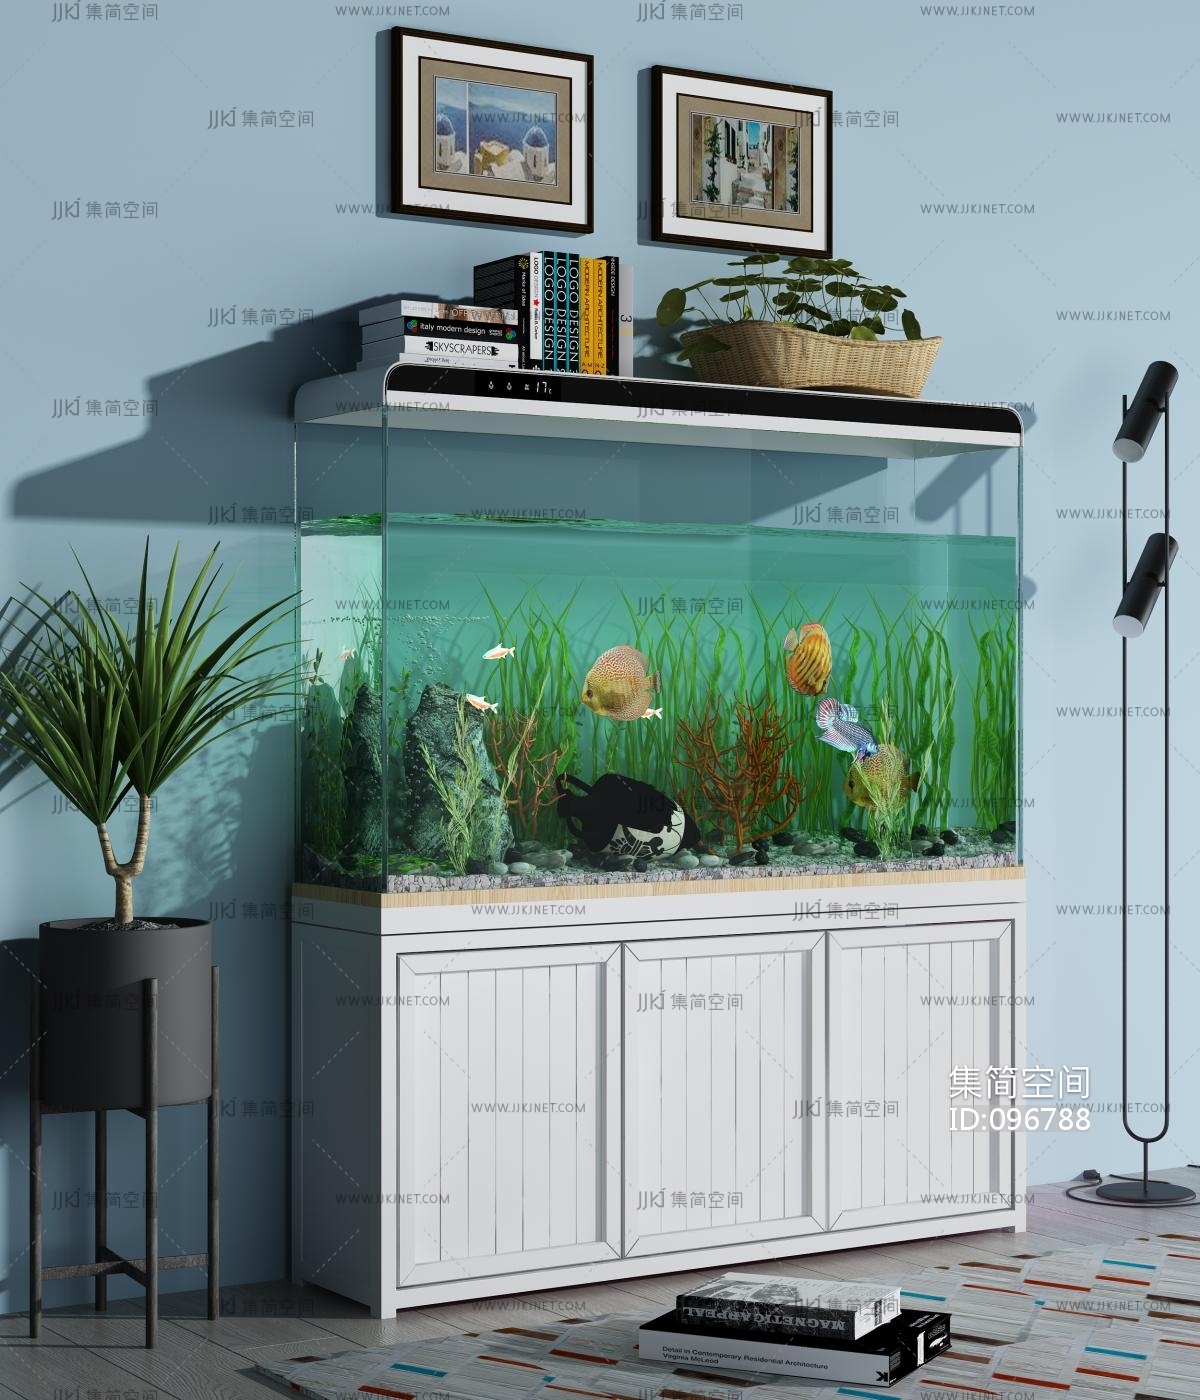 热弯玻璃鱼缸客厅中小型裸缸长方形龟缸创意桌面水族箱造景金鱼缸-阿里巴巴